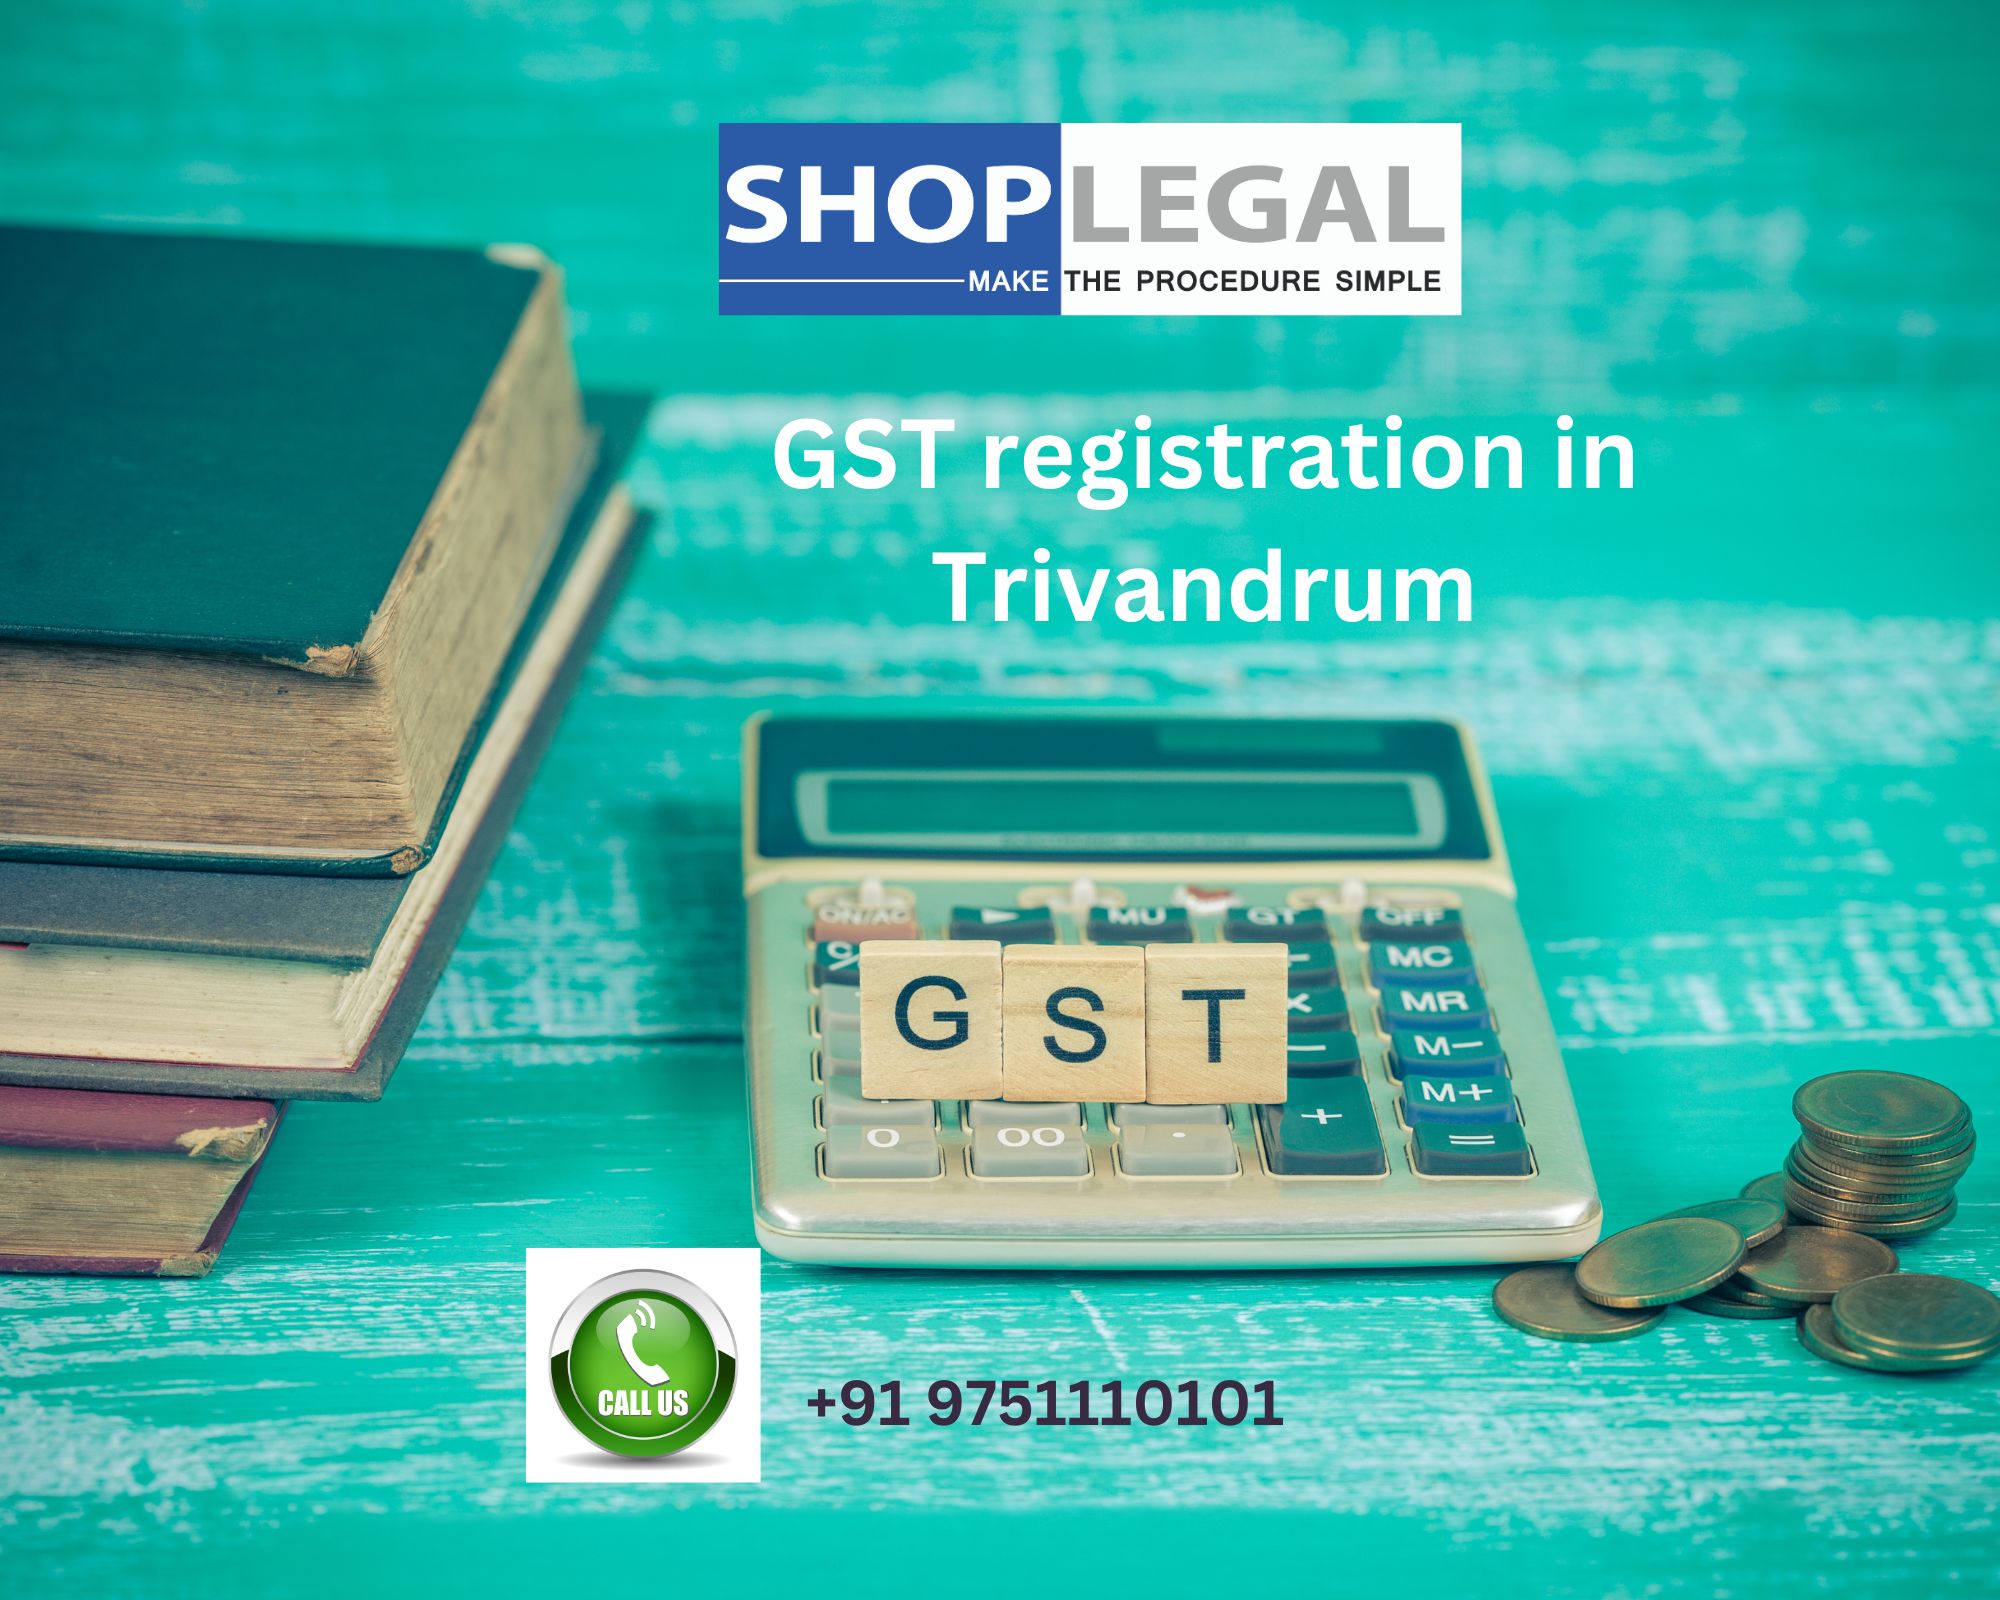 GST registration in Trivandrum